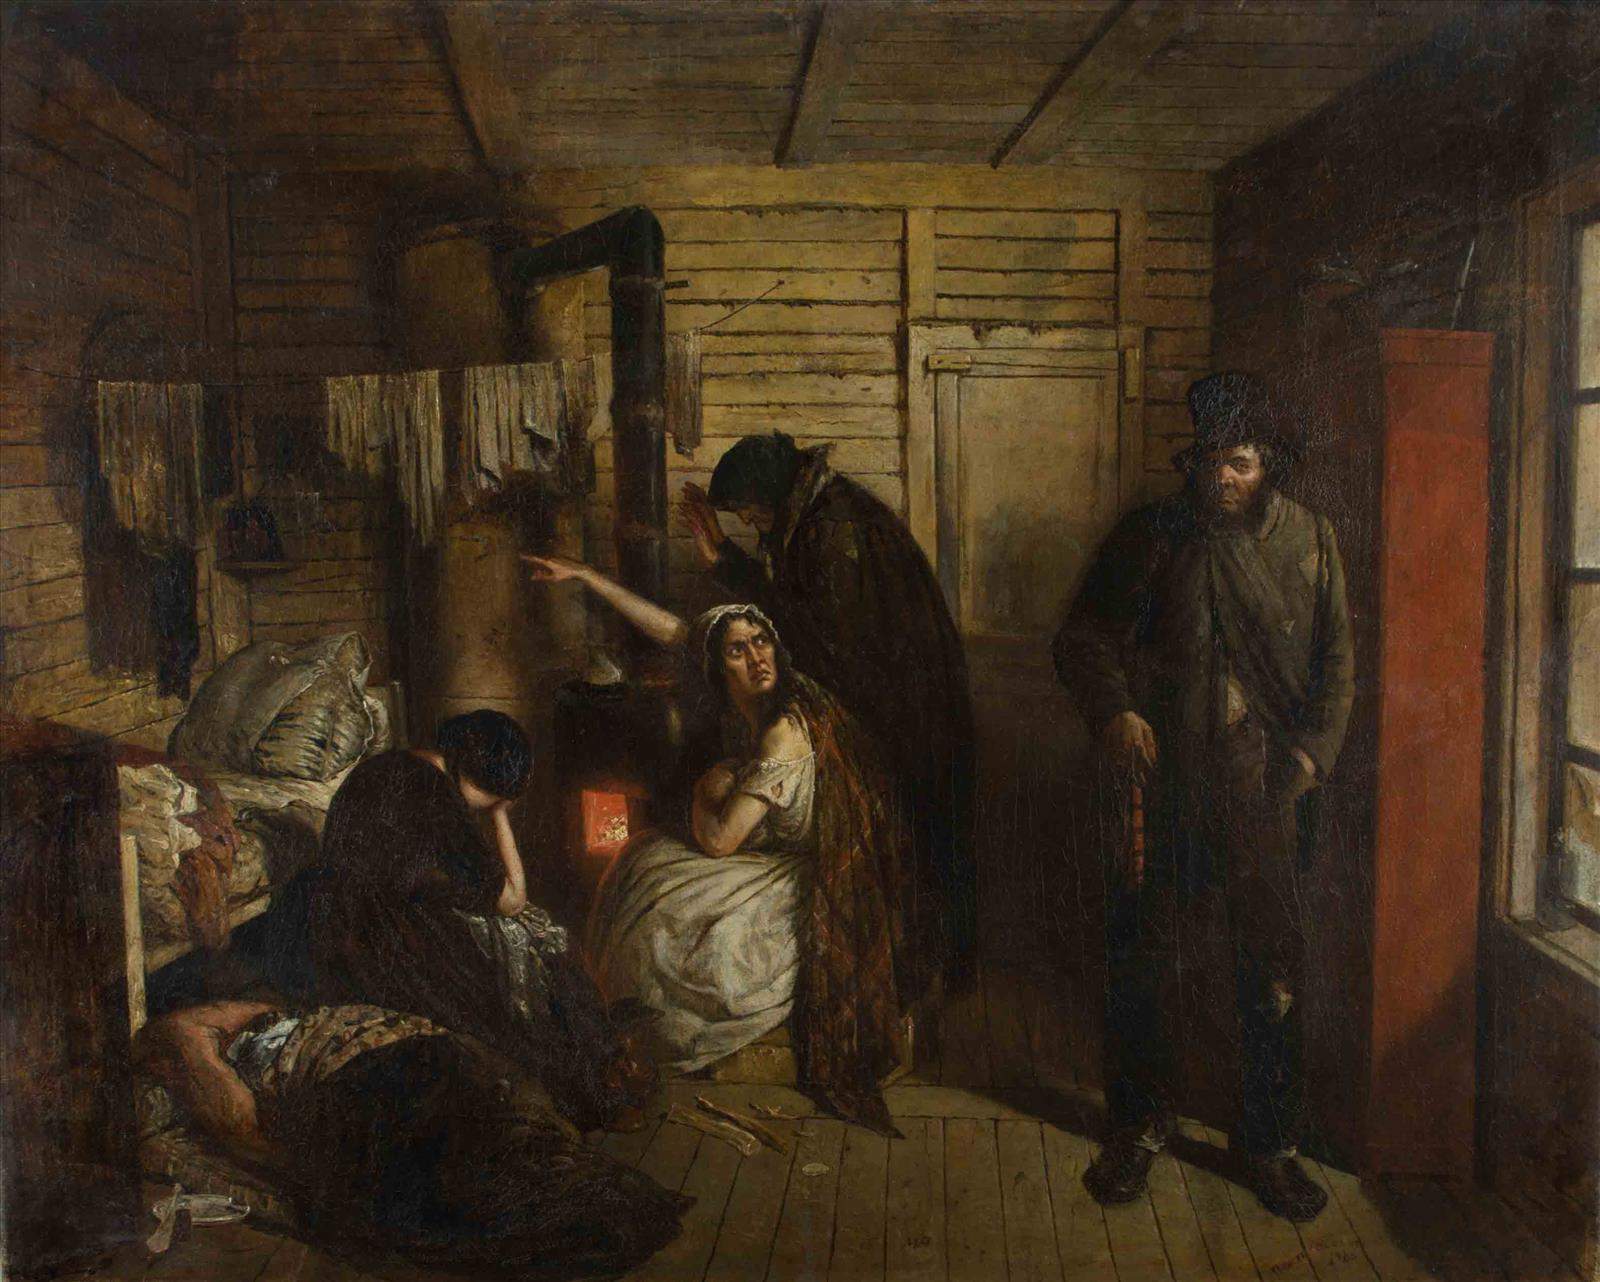 Petr Petrovich SOKOLOV (1821-1899)"Der Betrunkene"
Gemälde Öl/Leinwand (wachsdoubliert), 71 cm x